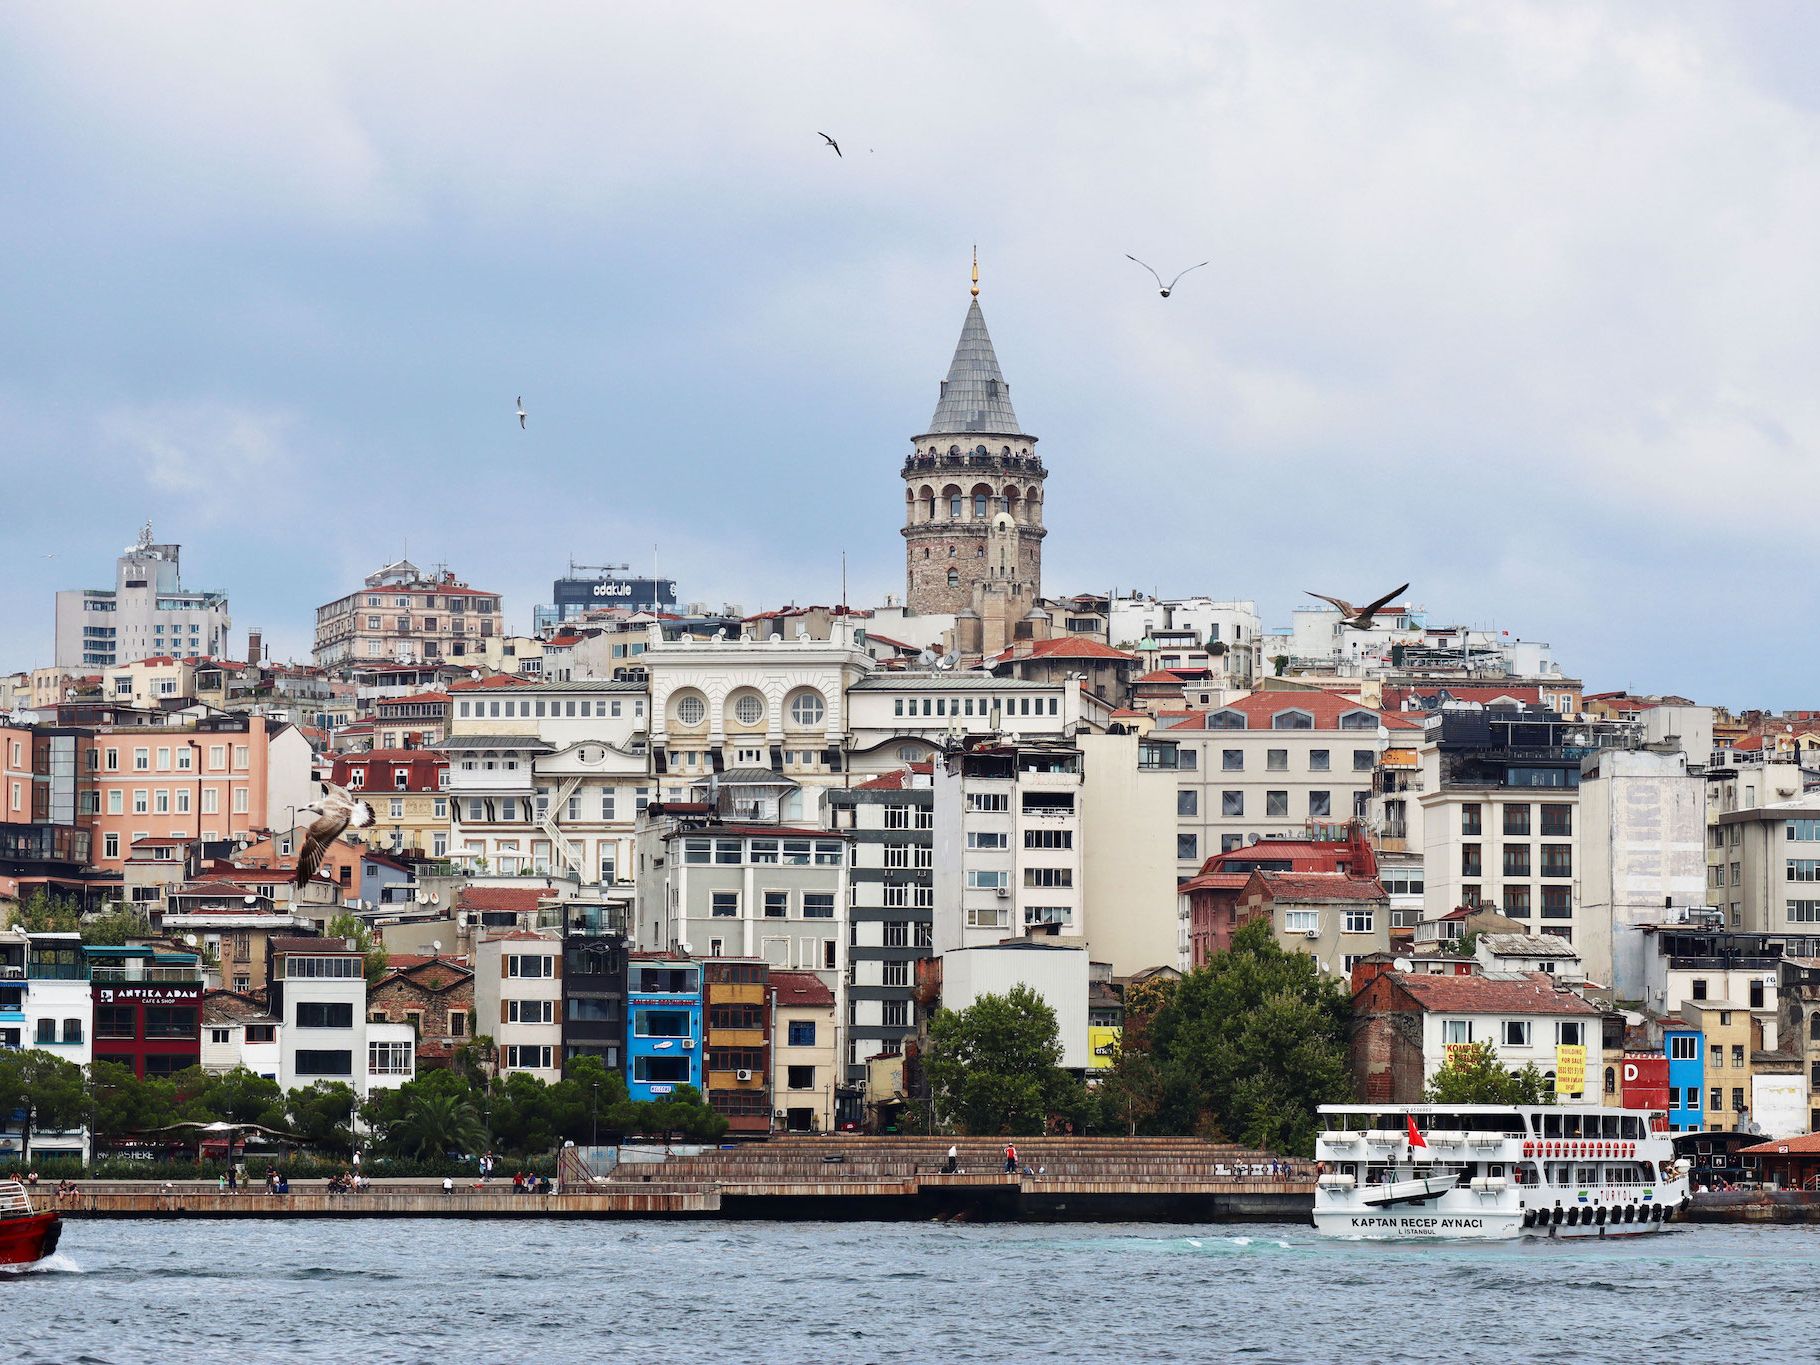 ガラタ塔からの眺めは最高 イスタンブール新市街の歴史的背景も解説 やまでら くみこ のレシピ